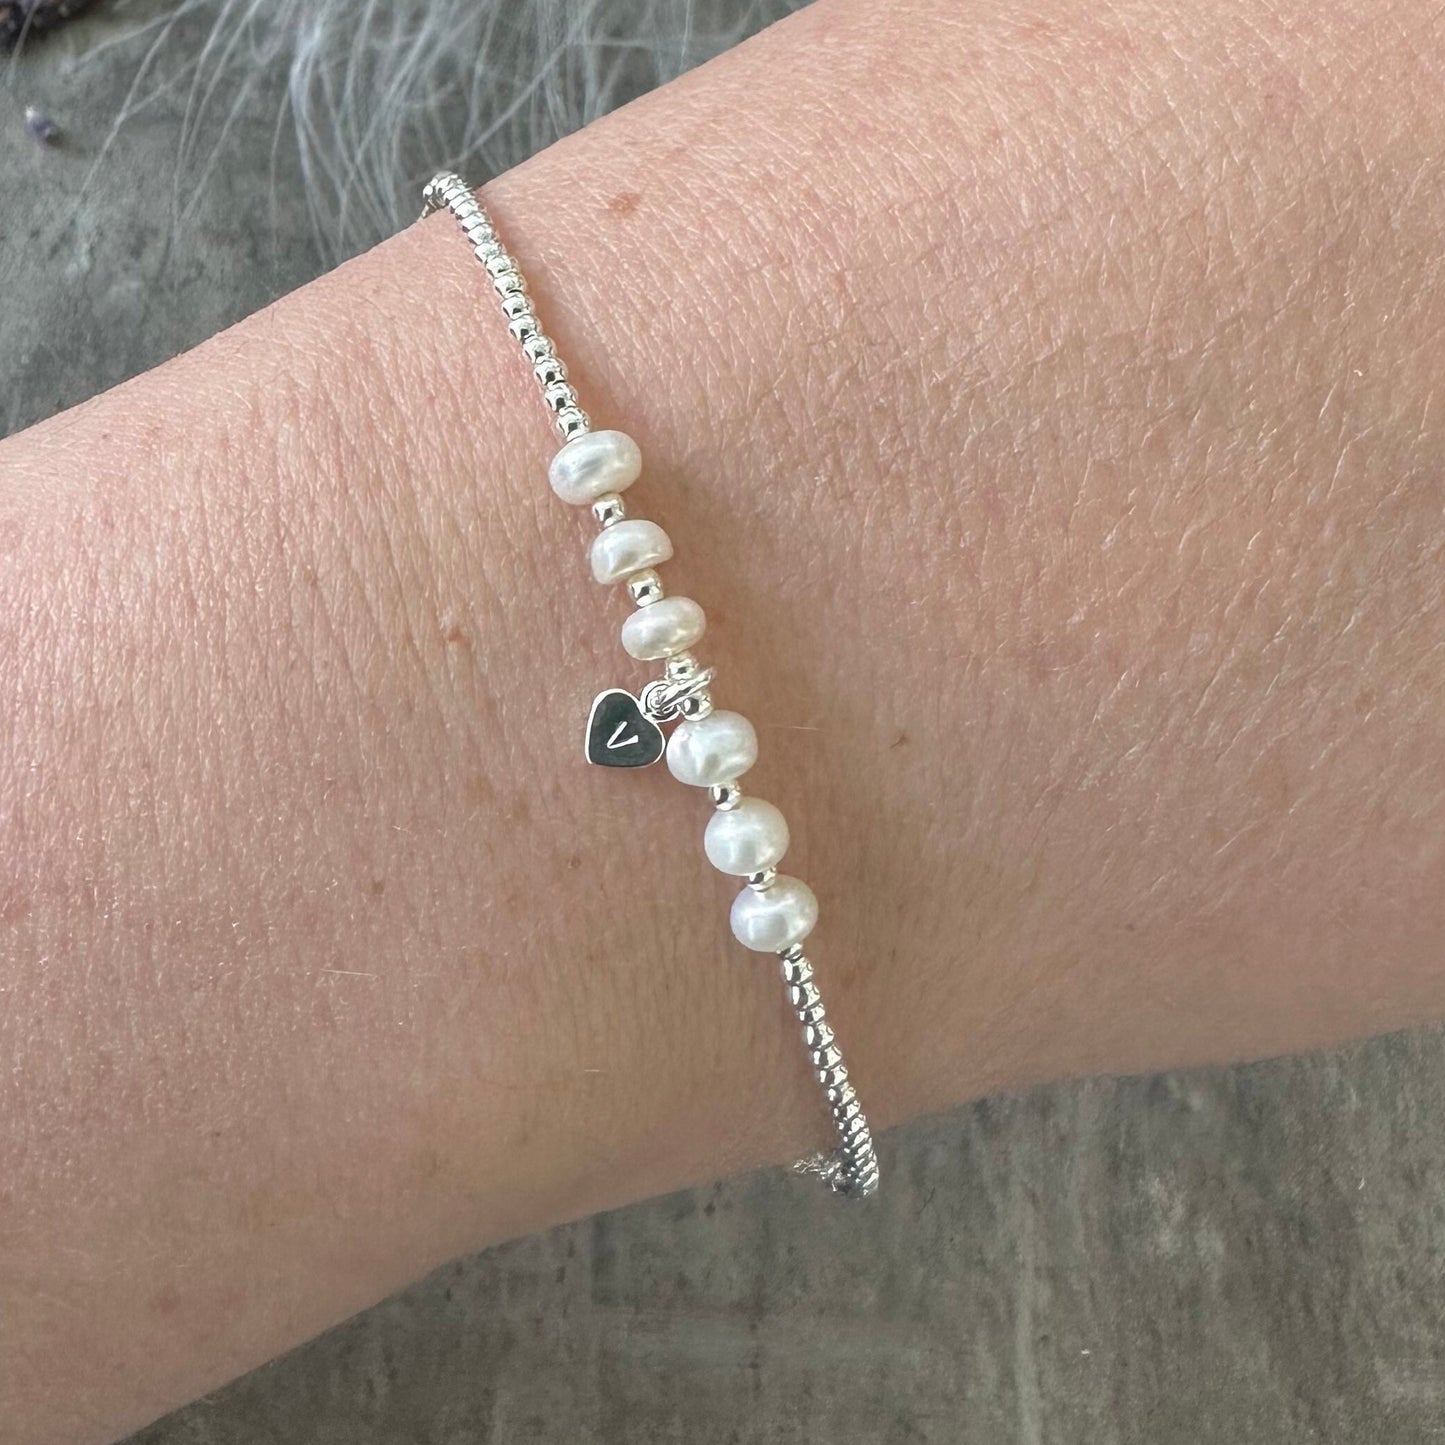 Personalised Pearl Bracelet, Dainty June Birthstone Jewellery in Sterling Silver